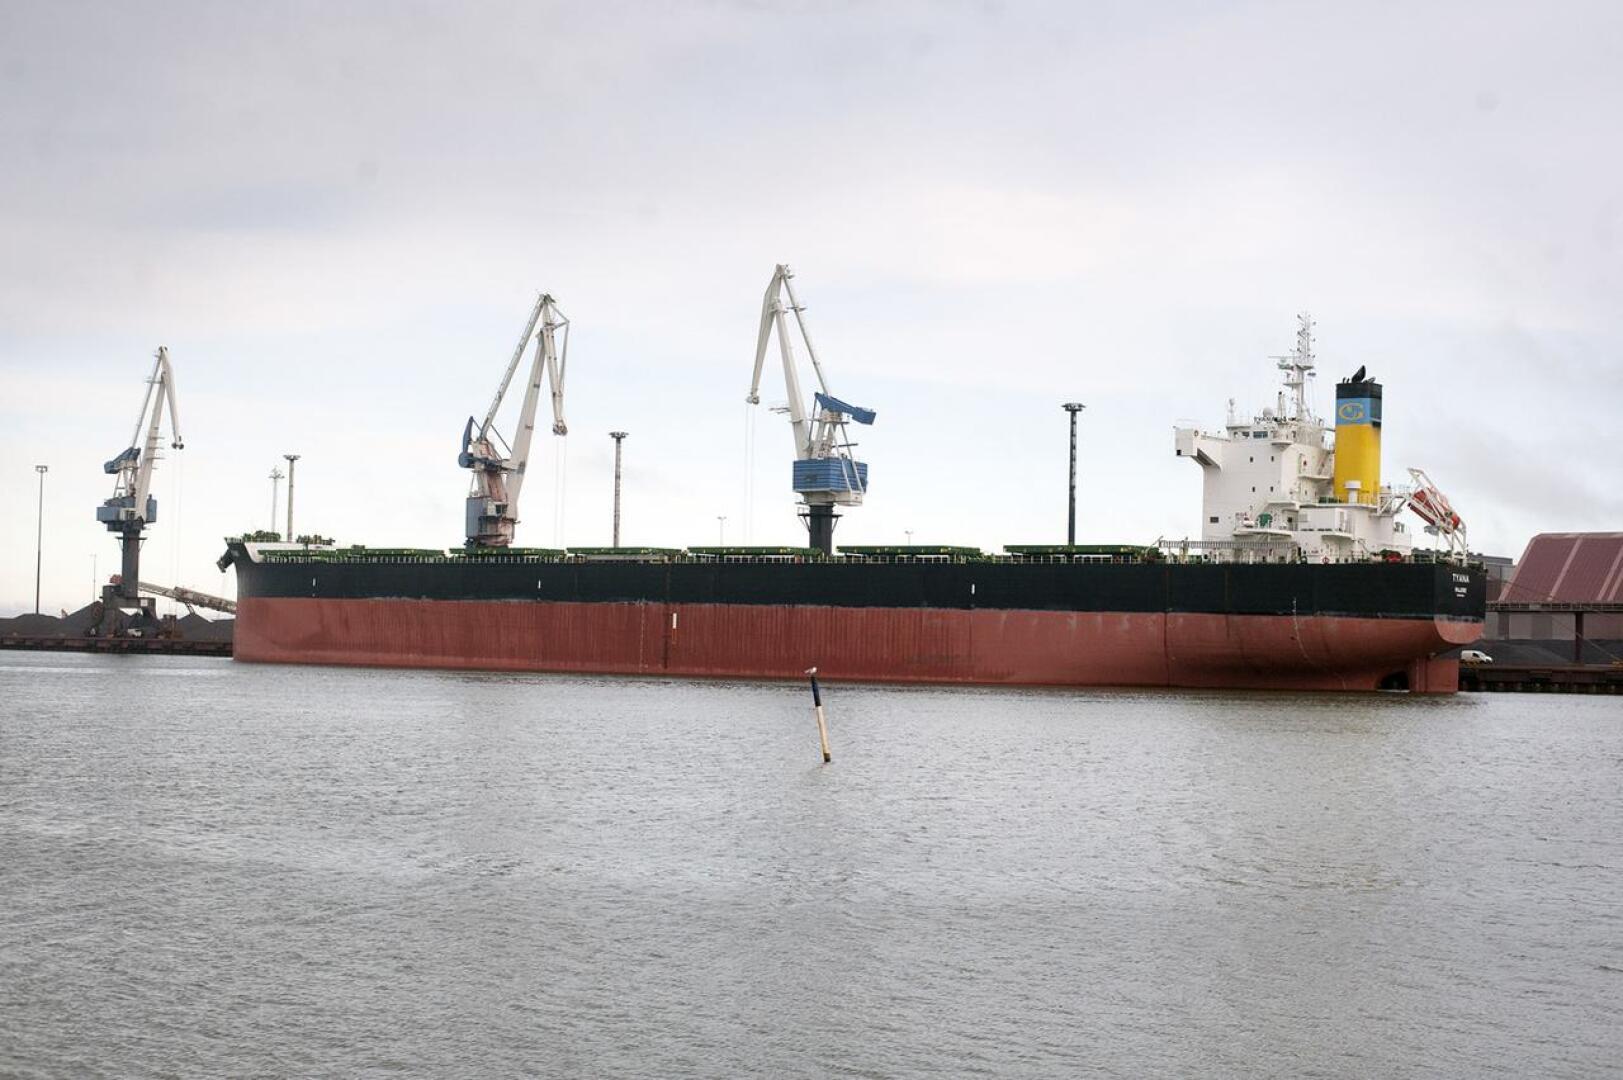 Ensimmäinen Panamax-laiva saapui syväväylää pitkin Kokkolan satamaan.